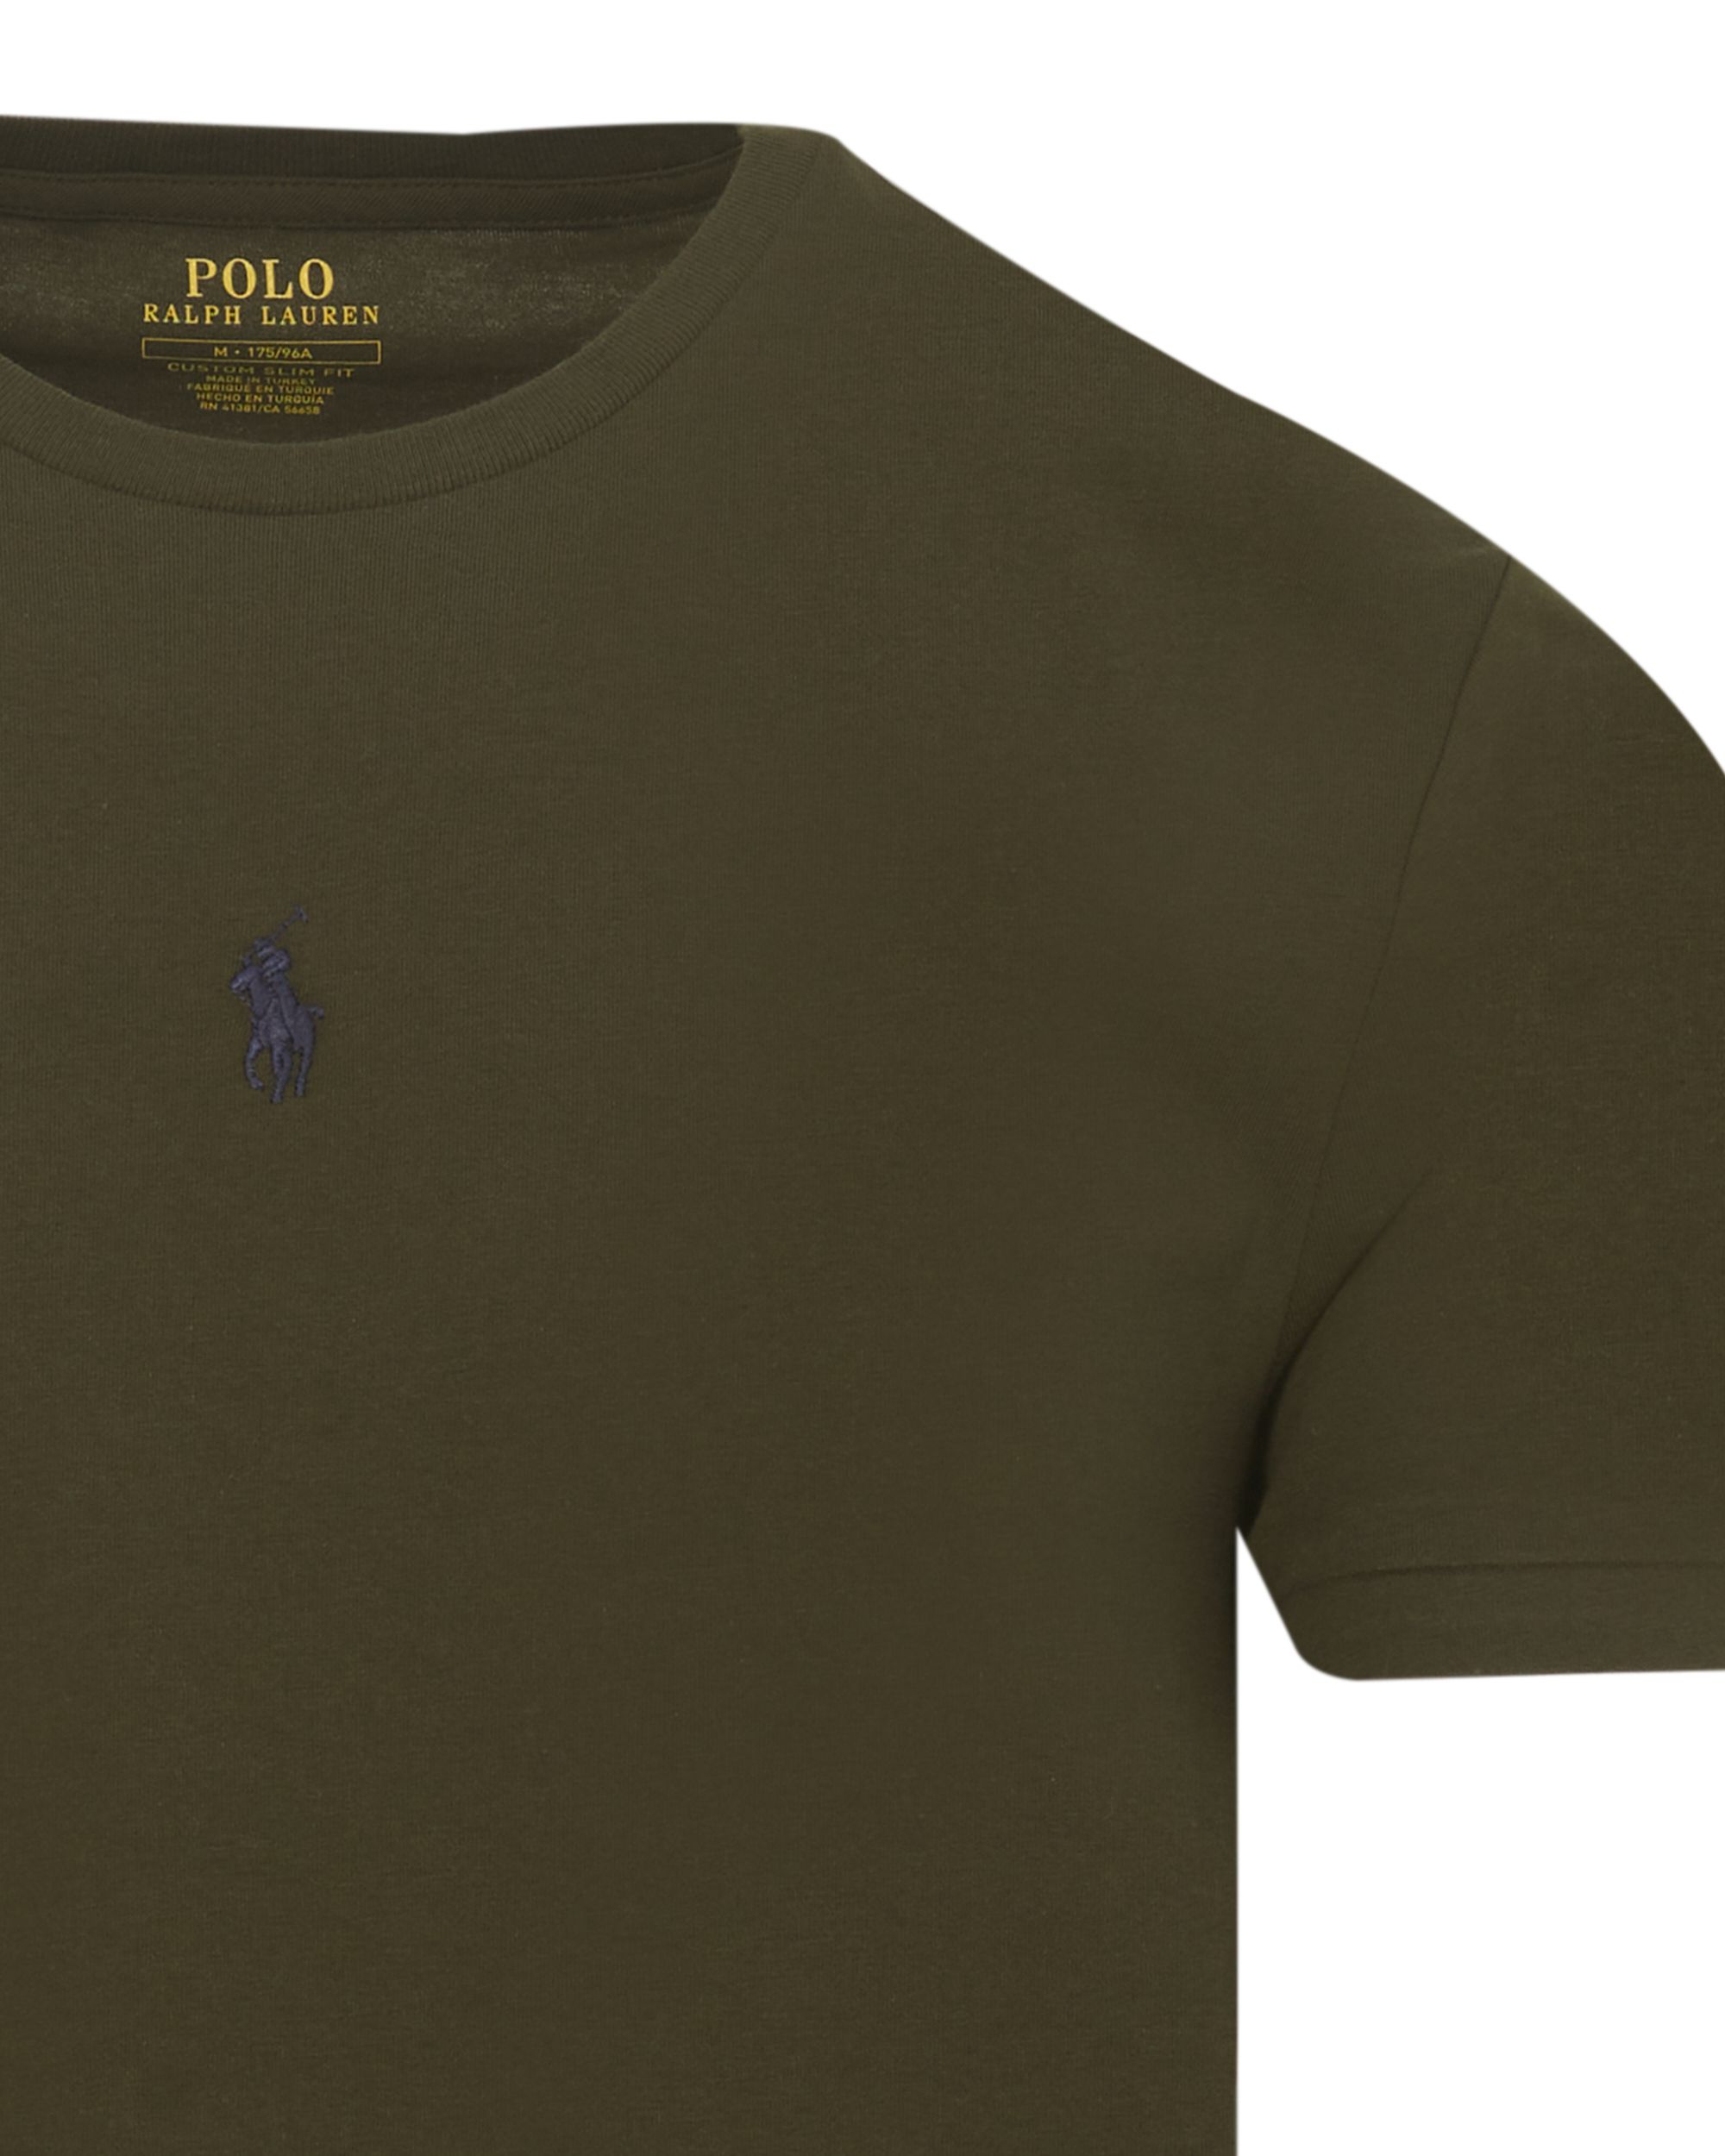 Polo Ralph Lauren T-shirt KM Groen 083474-001-L